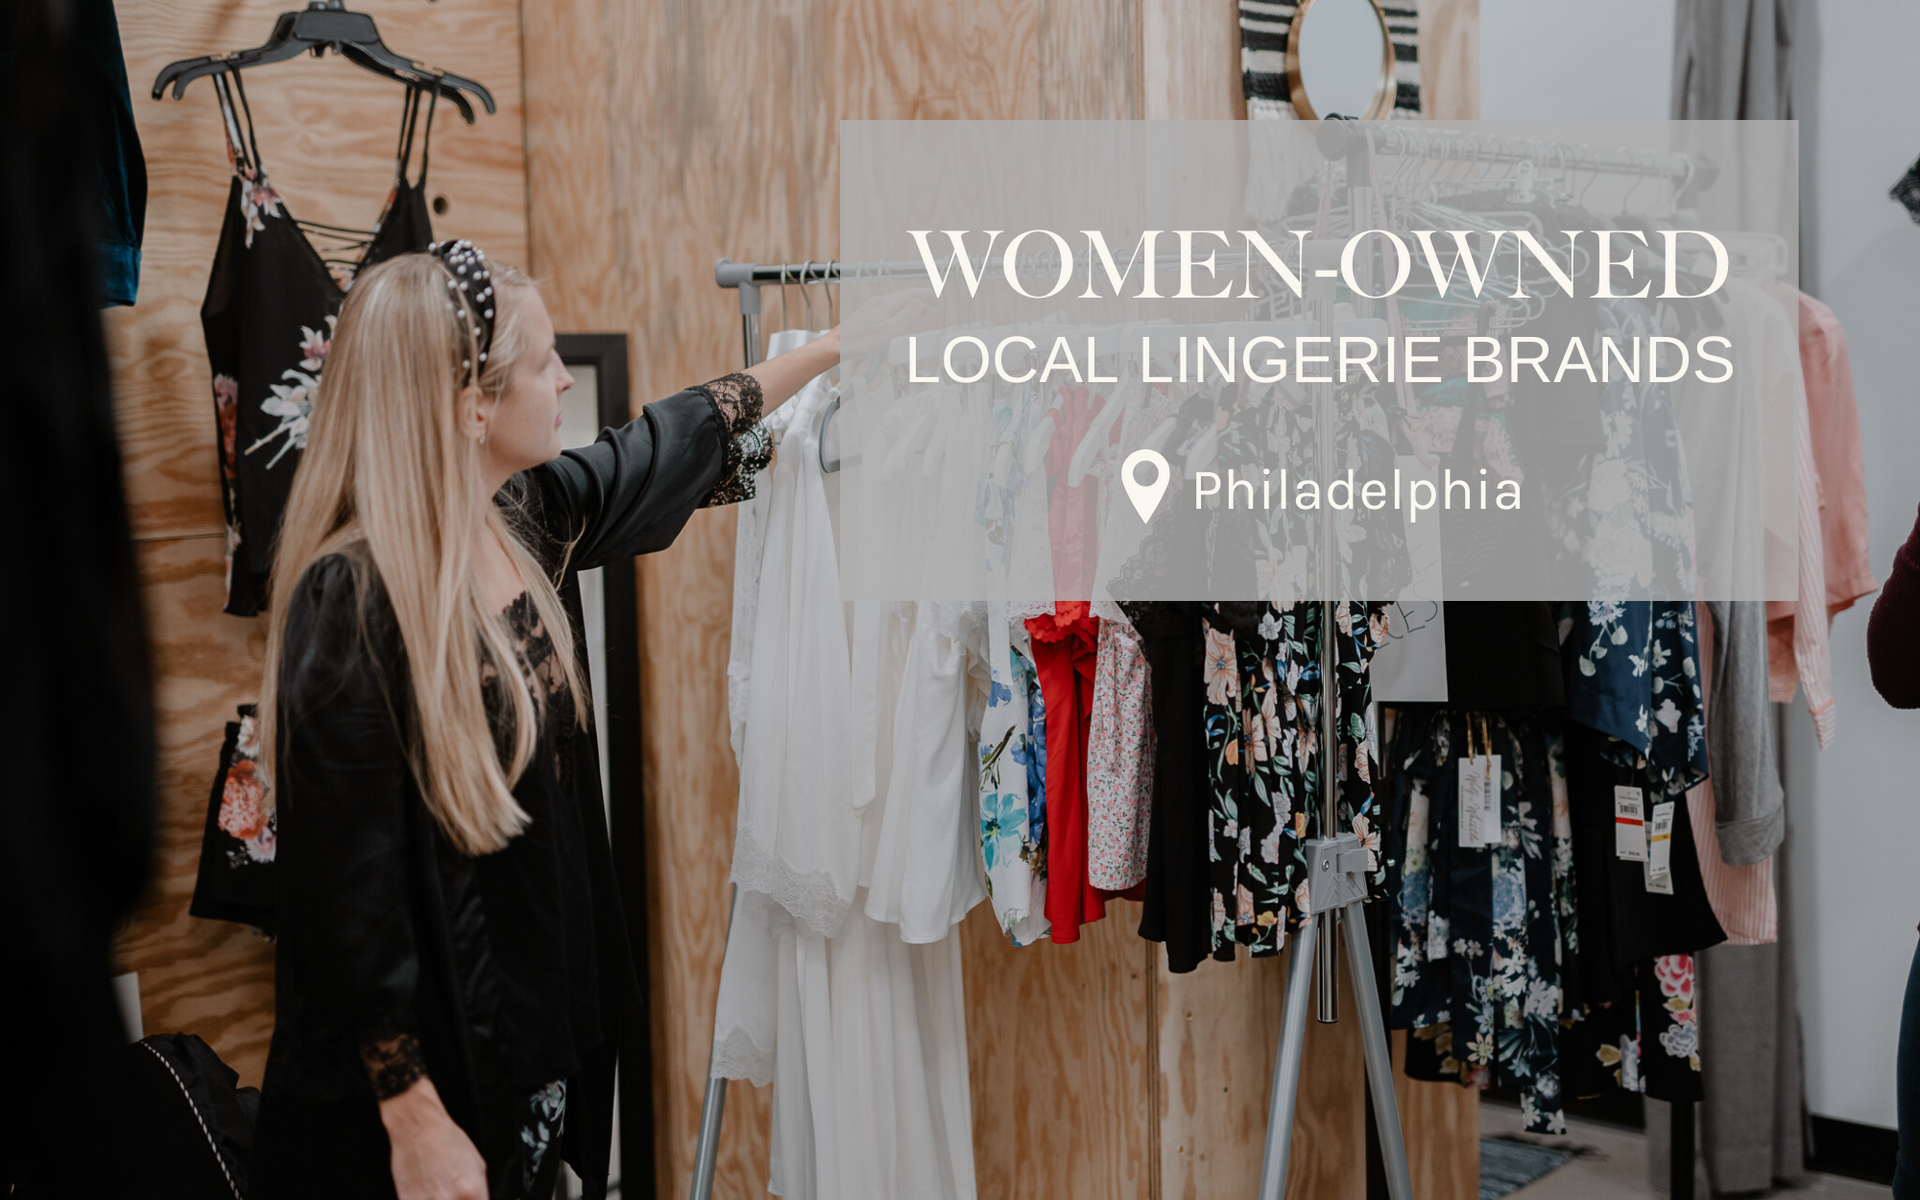 Women-owned local lingerie brands Philadelphia